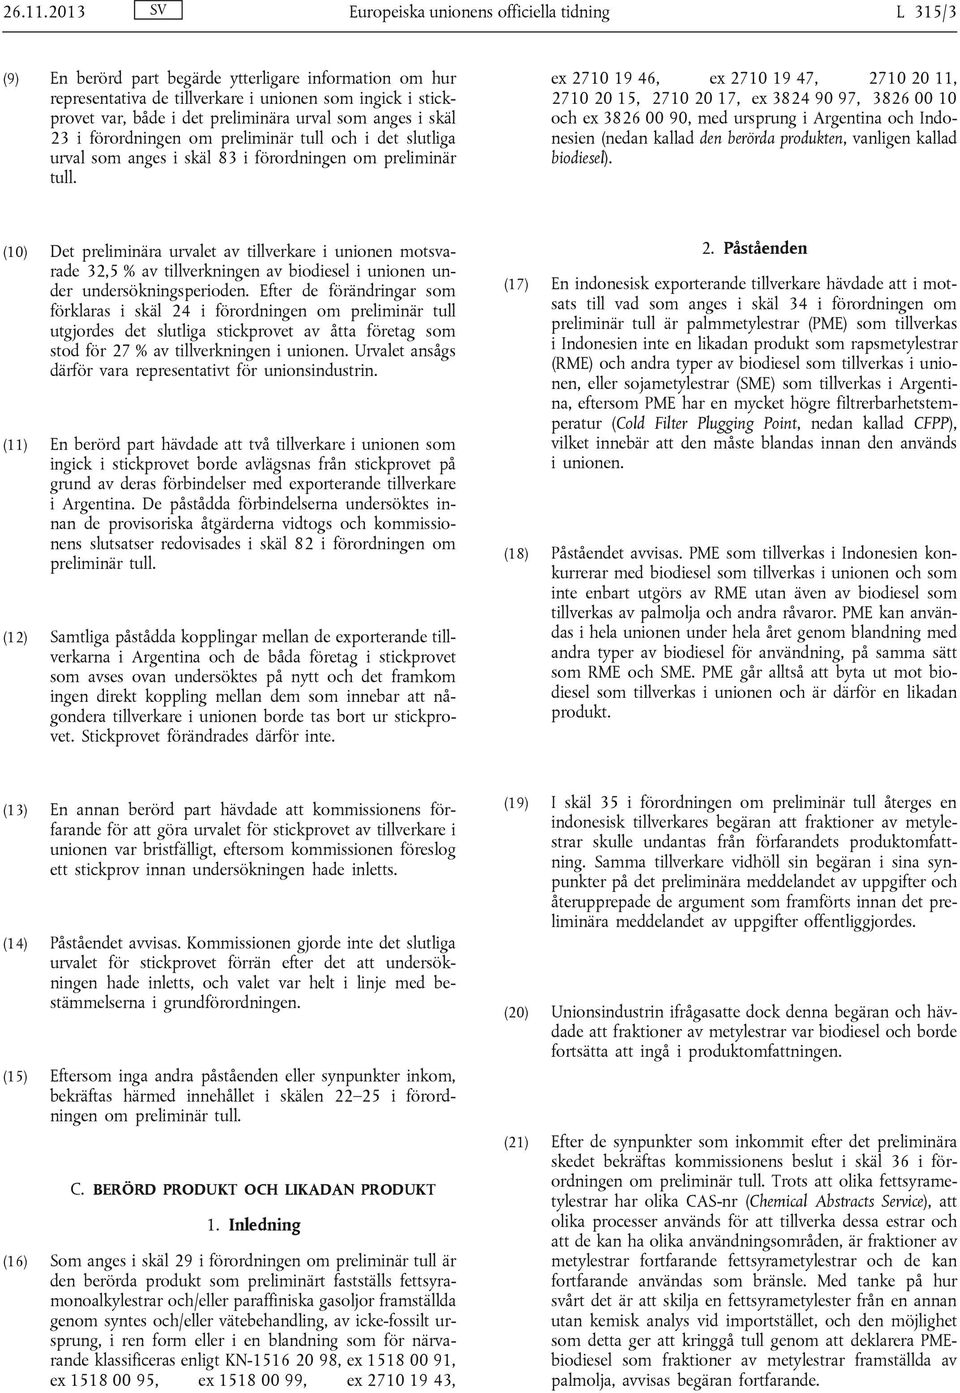 preliminära urval som anges i skäl 23 i förordningen om preliminär tull och i det slutliga urval som anges i skäl 83 i förordningen om preliminär tull.